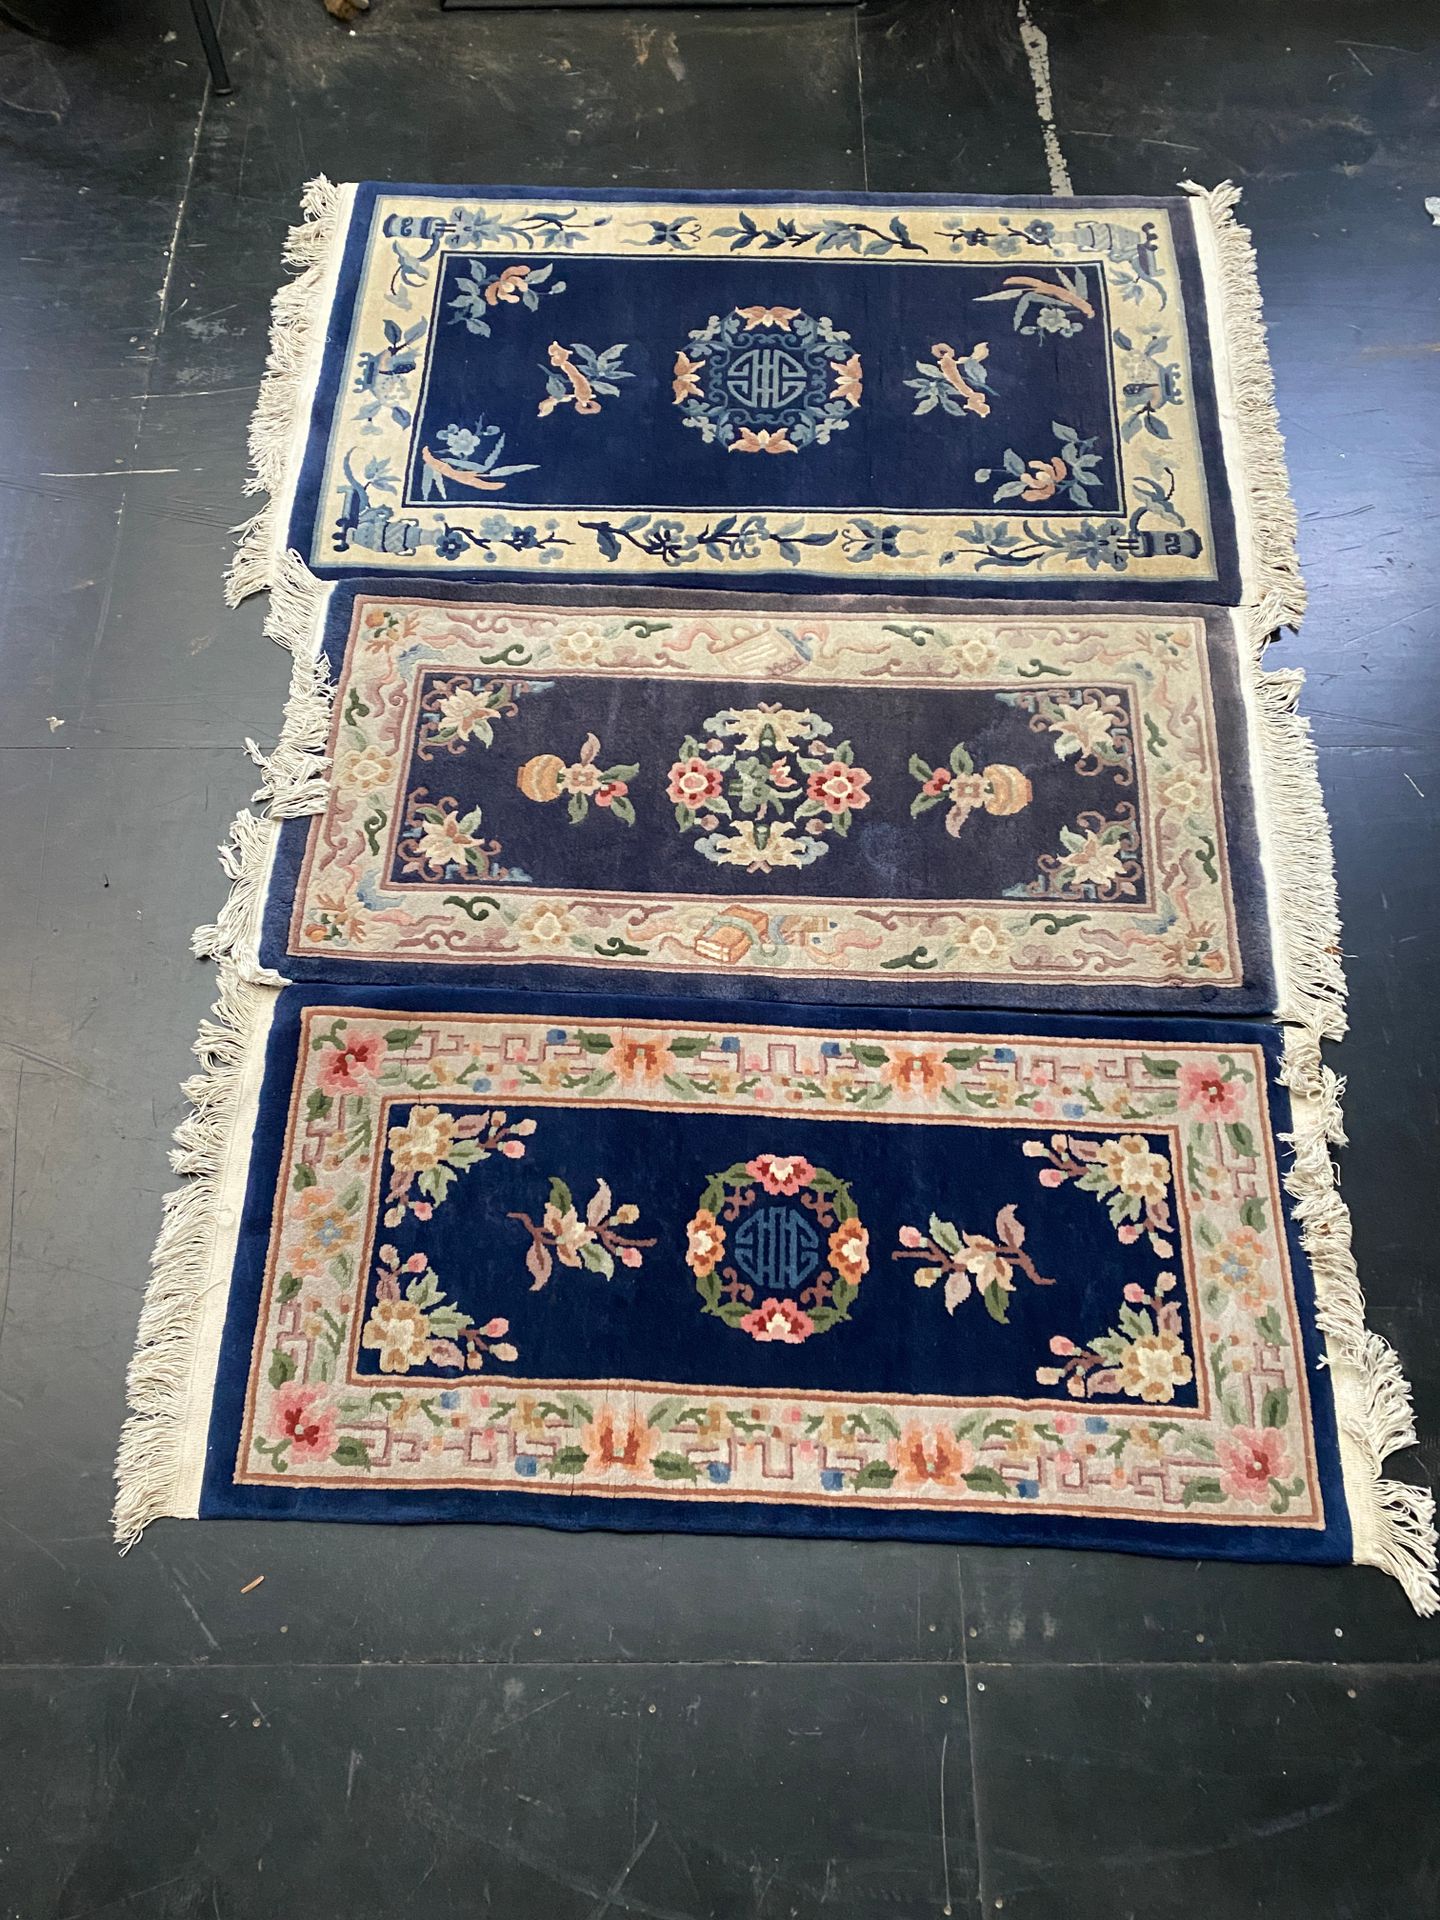 Null Set di tre tappeti cinesi con sfondo blu

160 x 94 cm (il più grande)